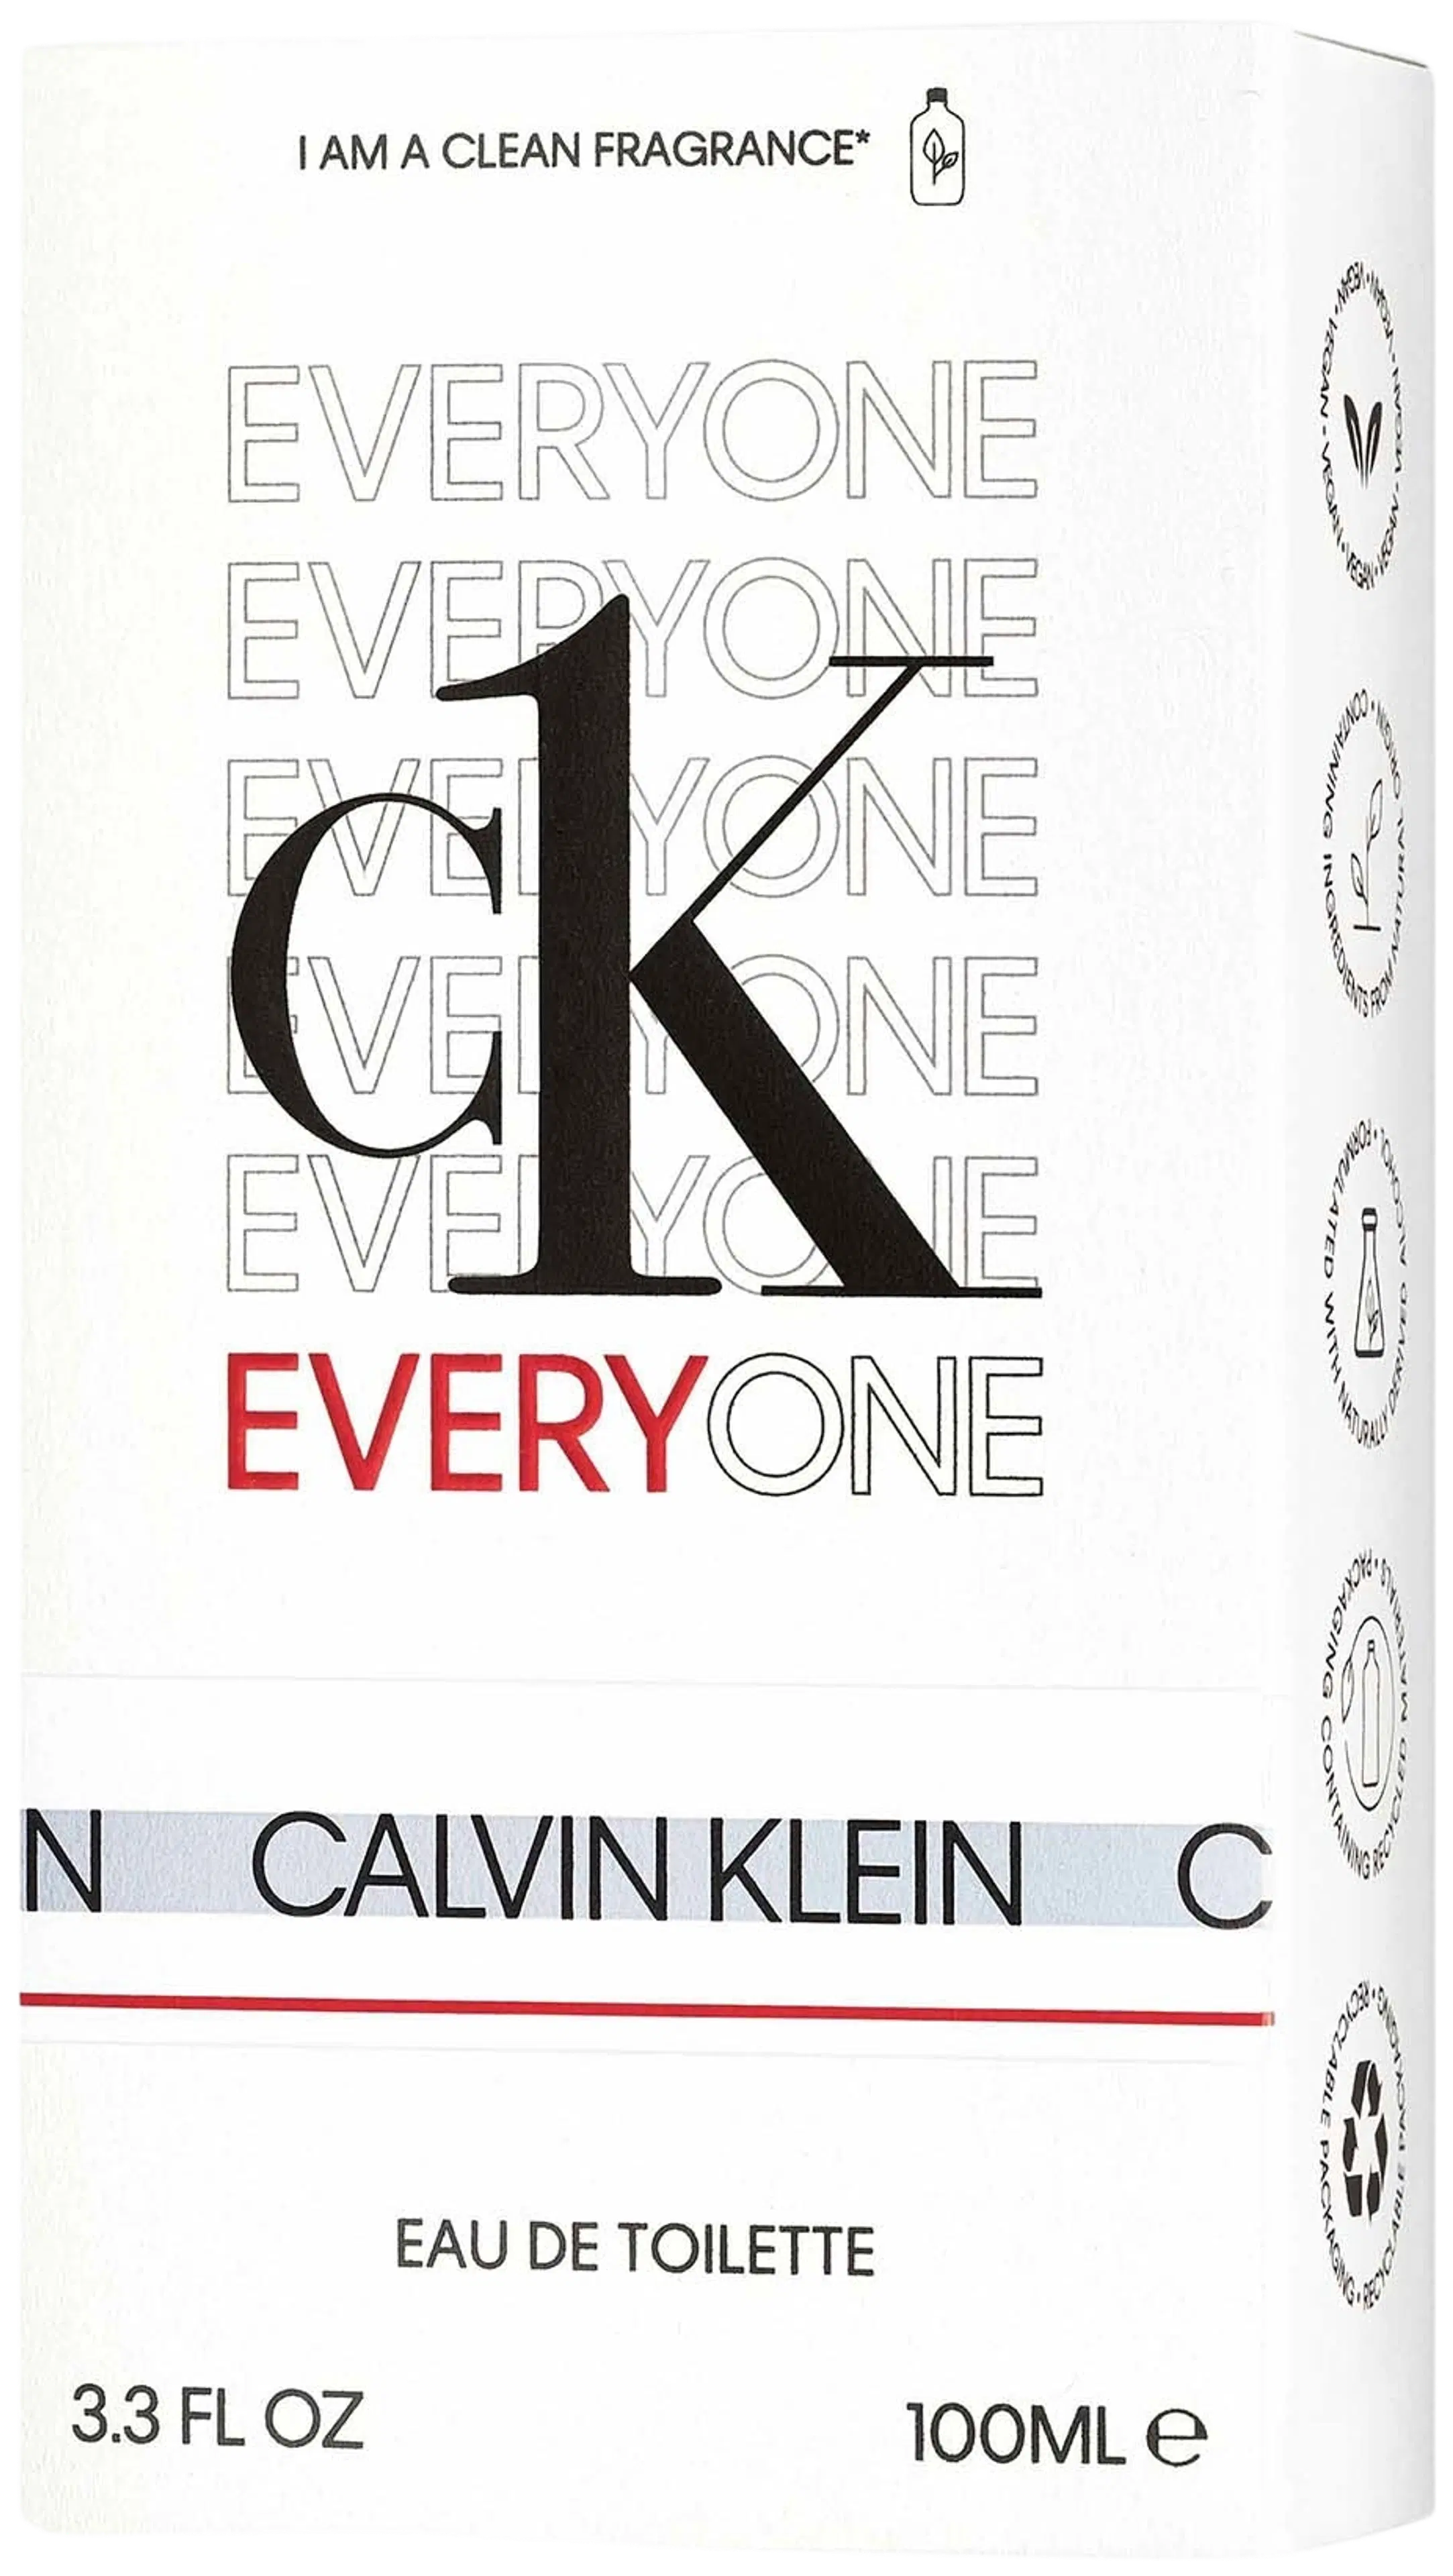 Calvin Klein CK Everyone EdT tuoksu 100 ml